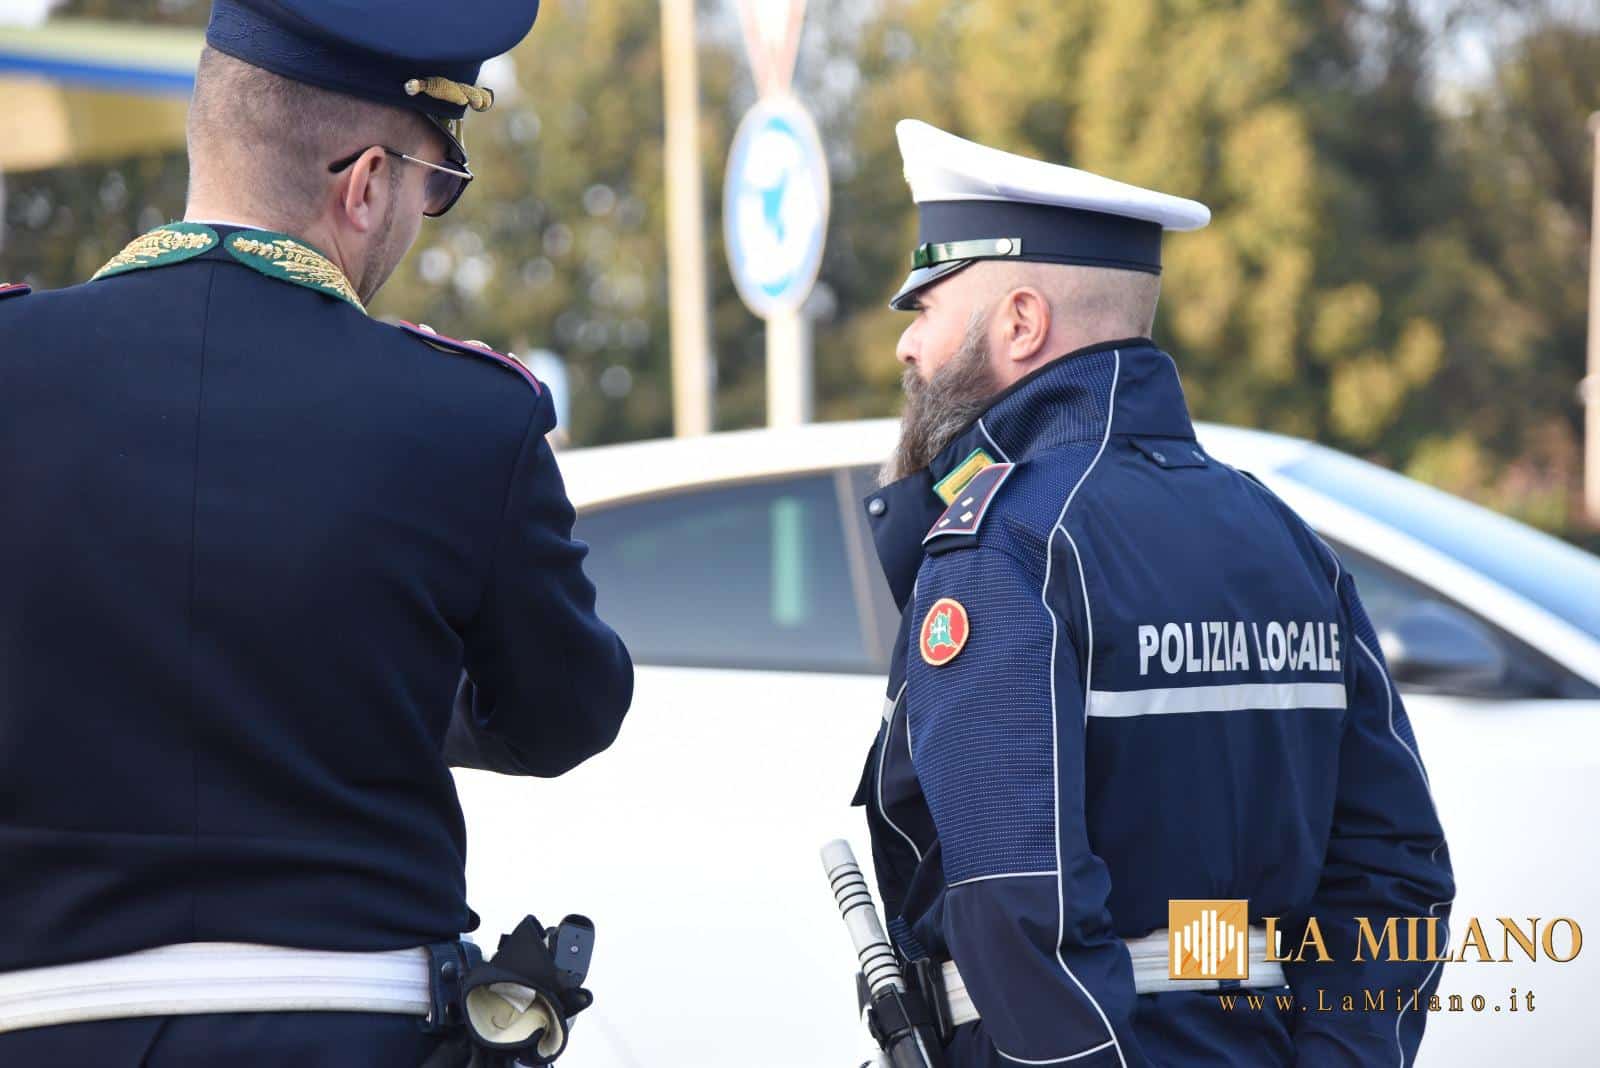 La Polizia Locale riceve da Regione Lombardia 2,5 milioni per l'acquisto di dotazioni tecnico strumentali.